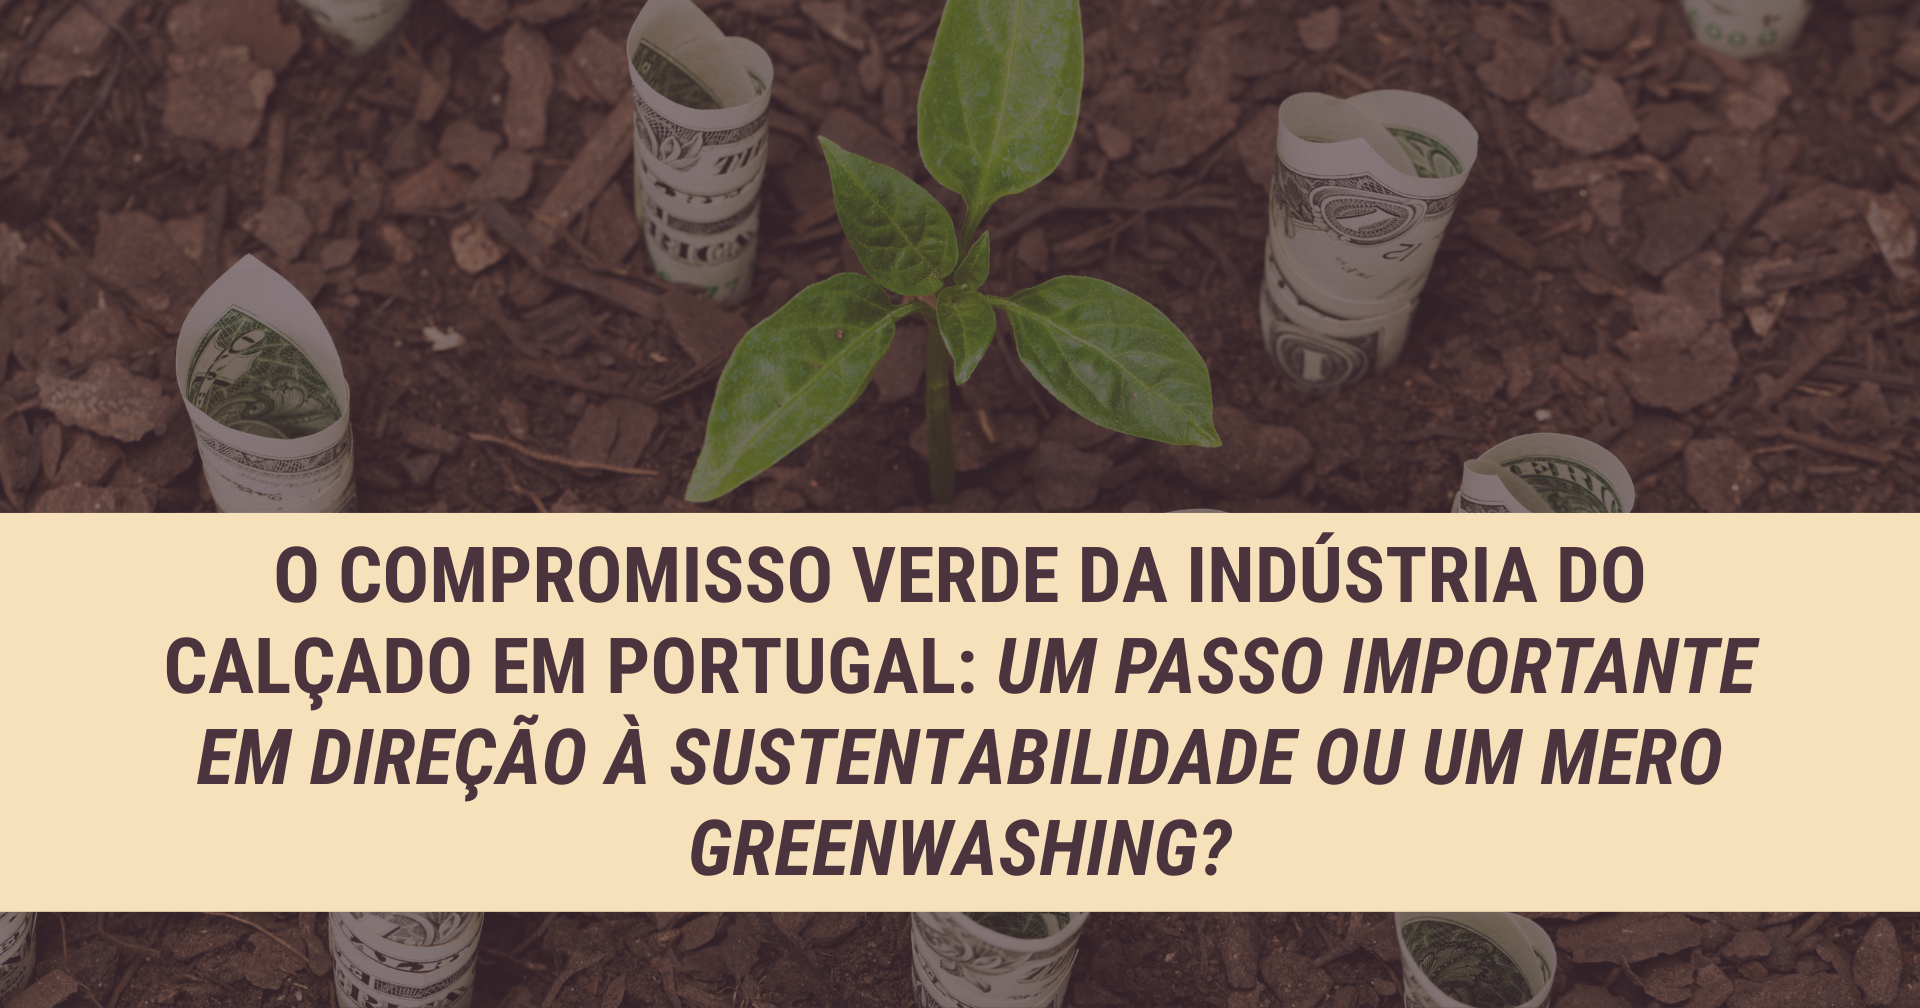 O Compromisso Verde da indústria do calçado em Portugal: um passo importante em direção à sustentabilidade ou um mero greenwashing?